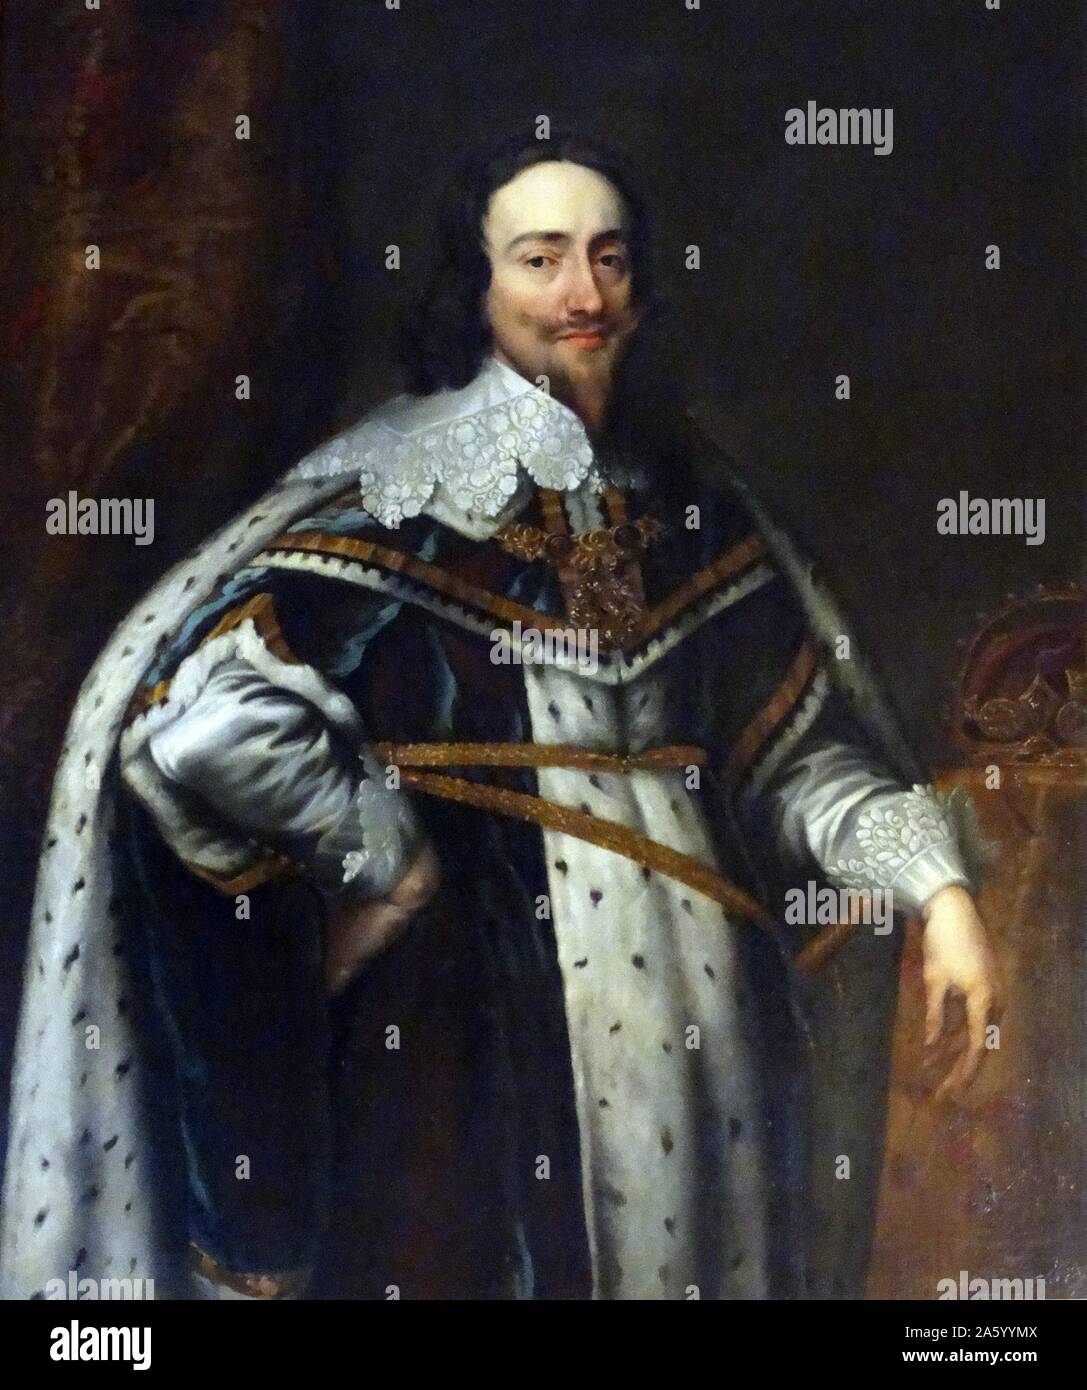 Ritratto di Re Carlo I, re d'Inghilterra, re di Scozia e il re di Irlanda. Da Anthony van Dyck (1599-1641) Barocco fiammingo artista. Risalenti al XVII secolo Foto Stock